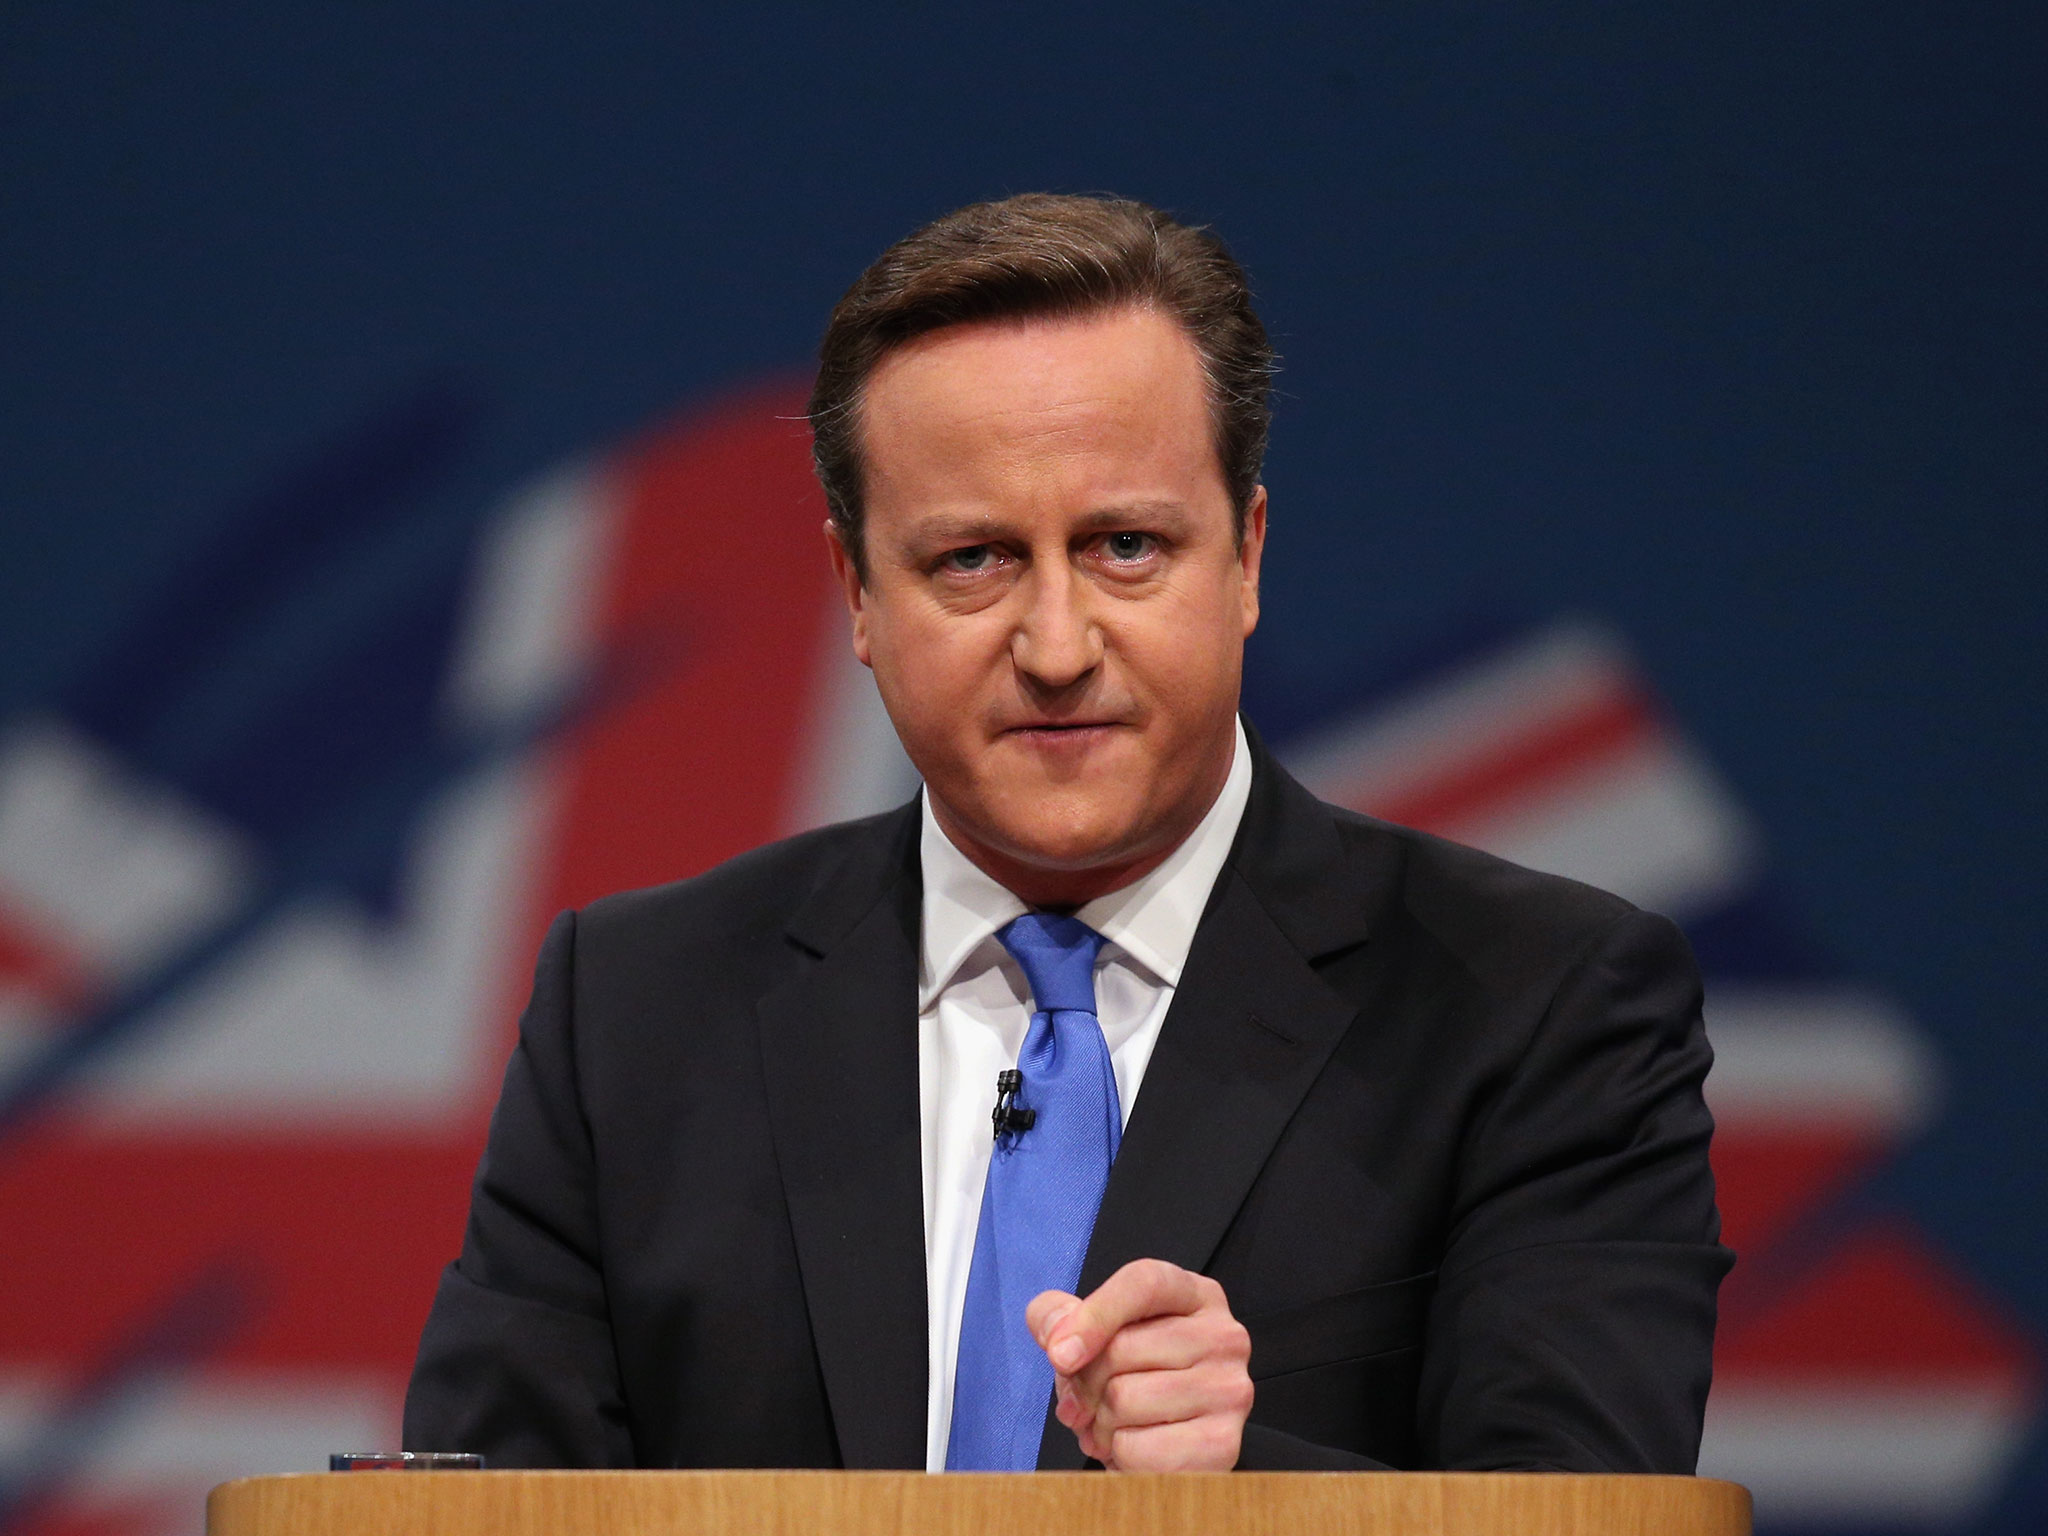 EU deal gives UK special status, says David Cameron